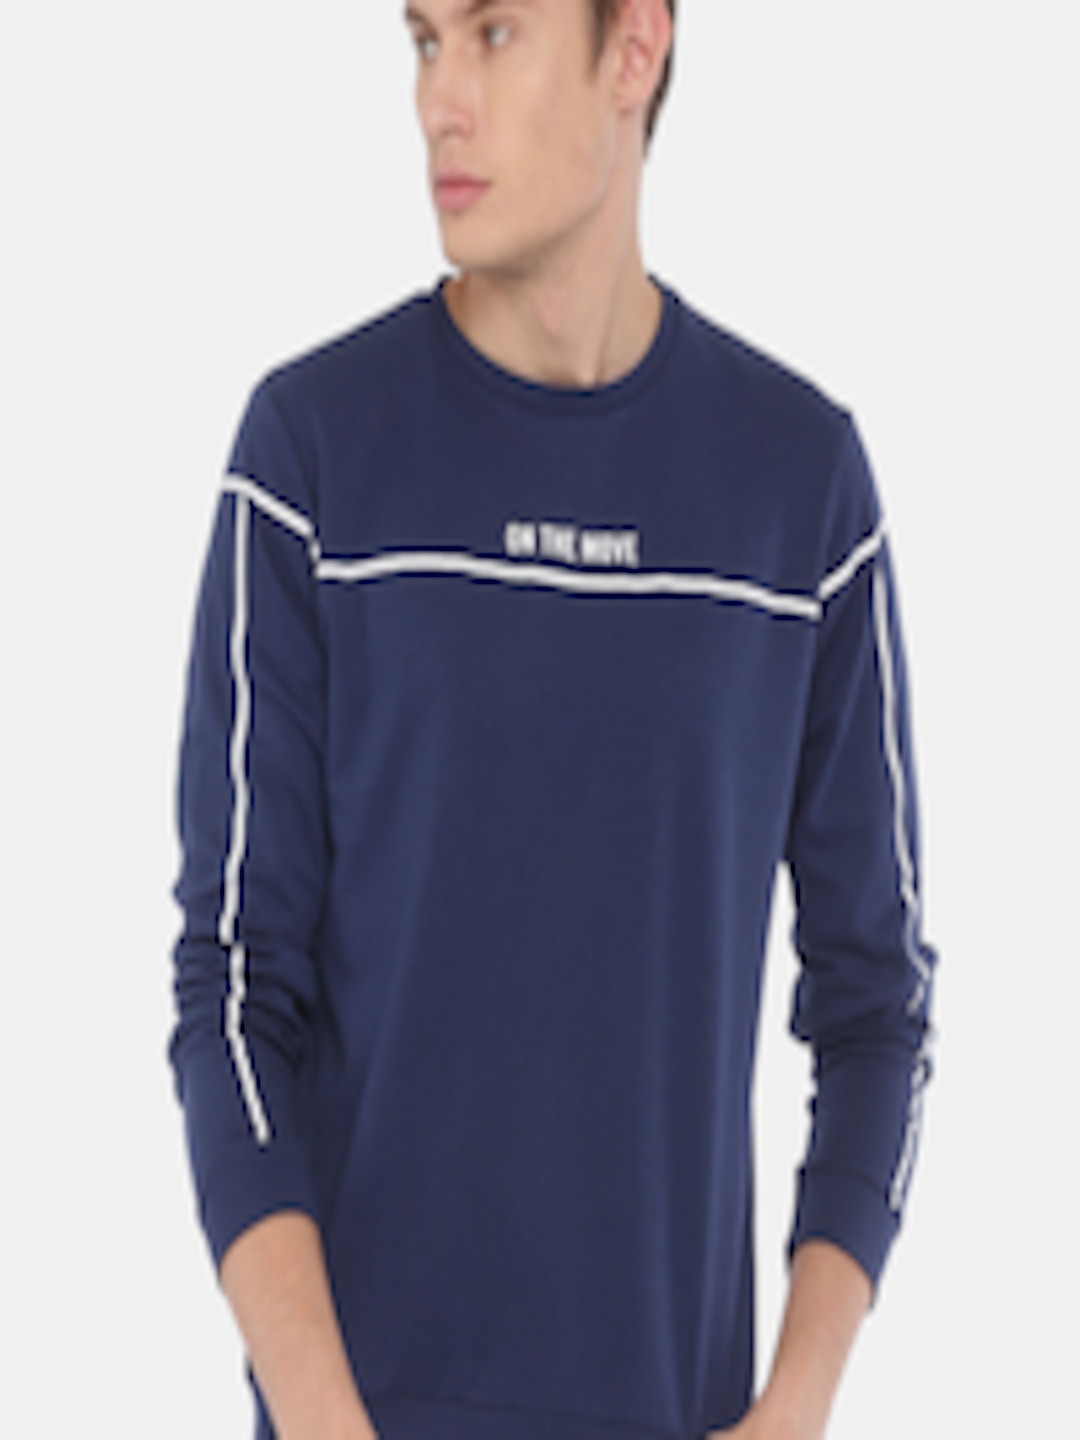 Buy Proline Active Men Navy Blue Printed Sweatshirt - Sweatshirts for ...